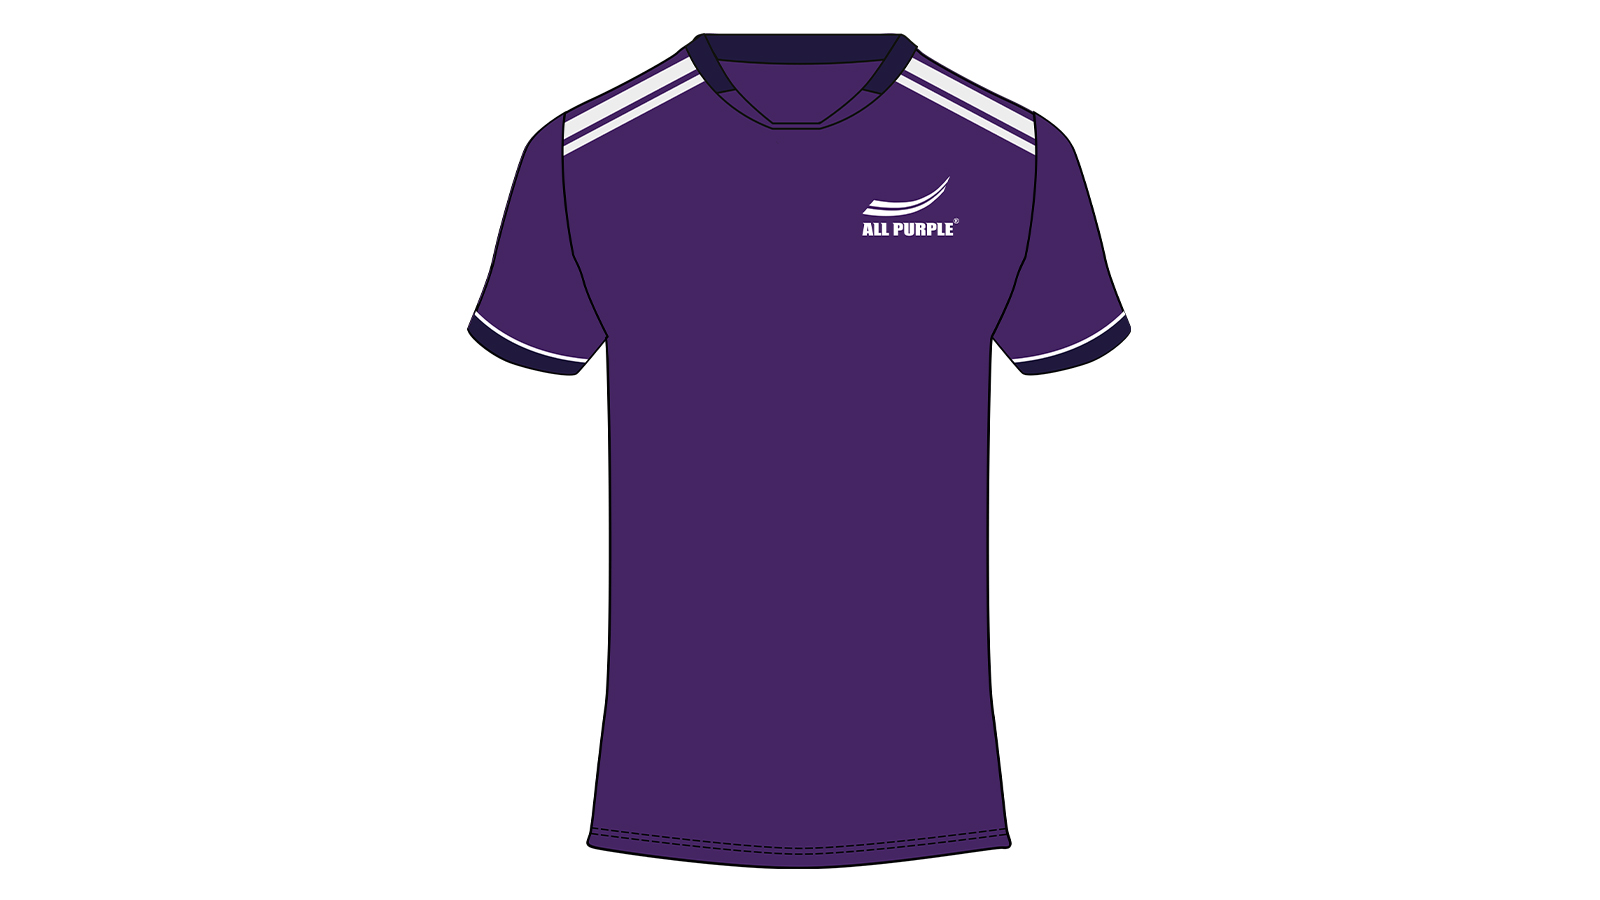 All purple team